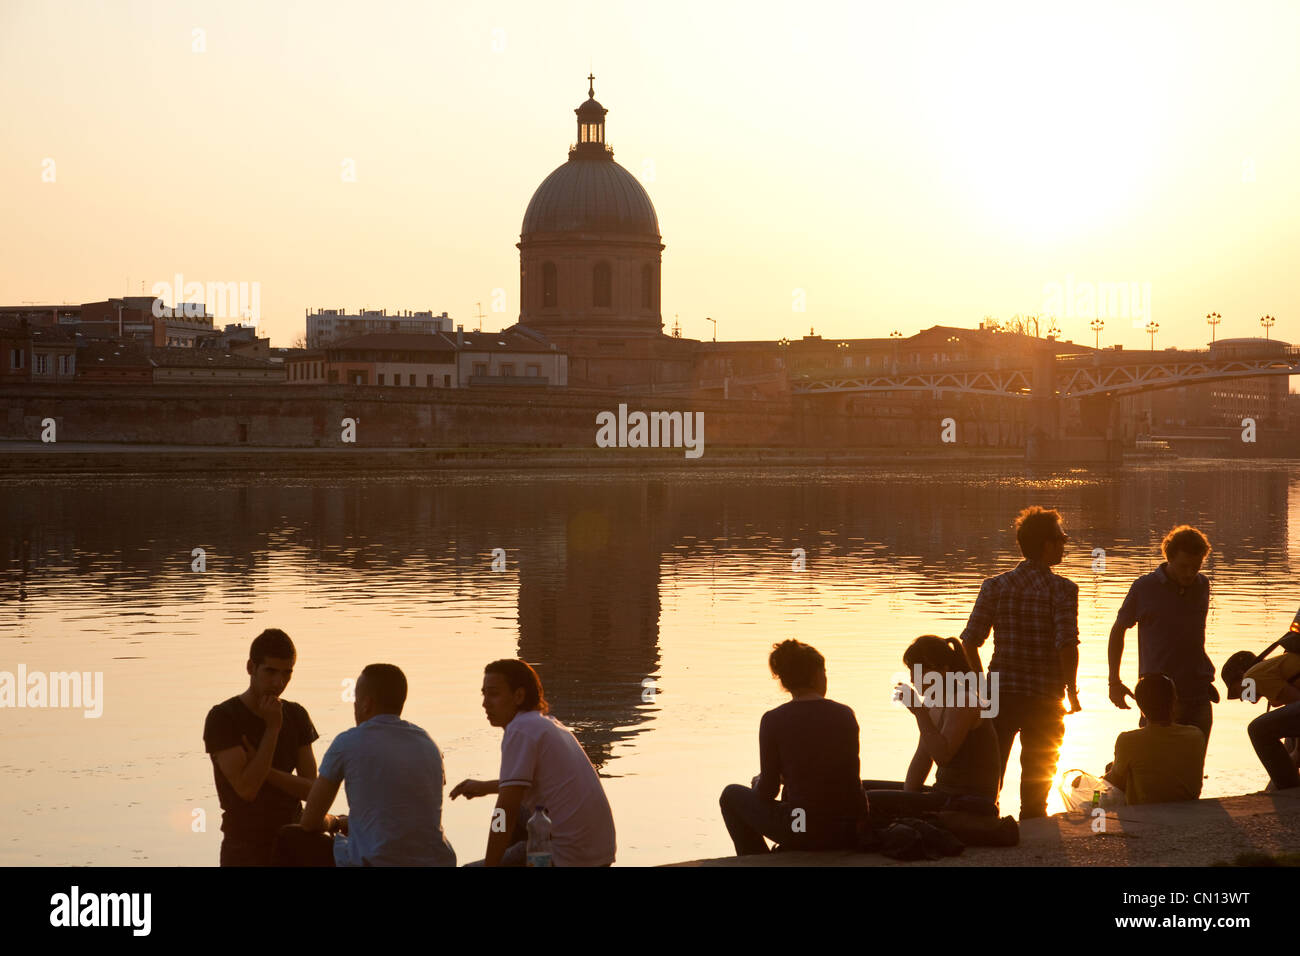 People sit on the banks of La Garonne, as the sun sets close to Dome de la Grave, Toulouse, France Stock Photo